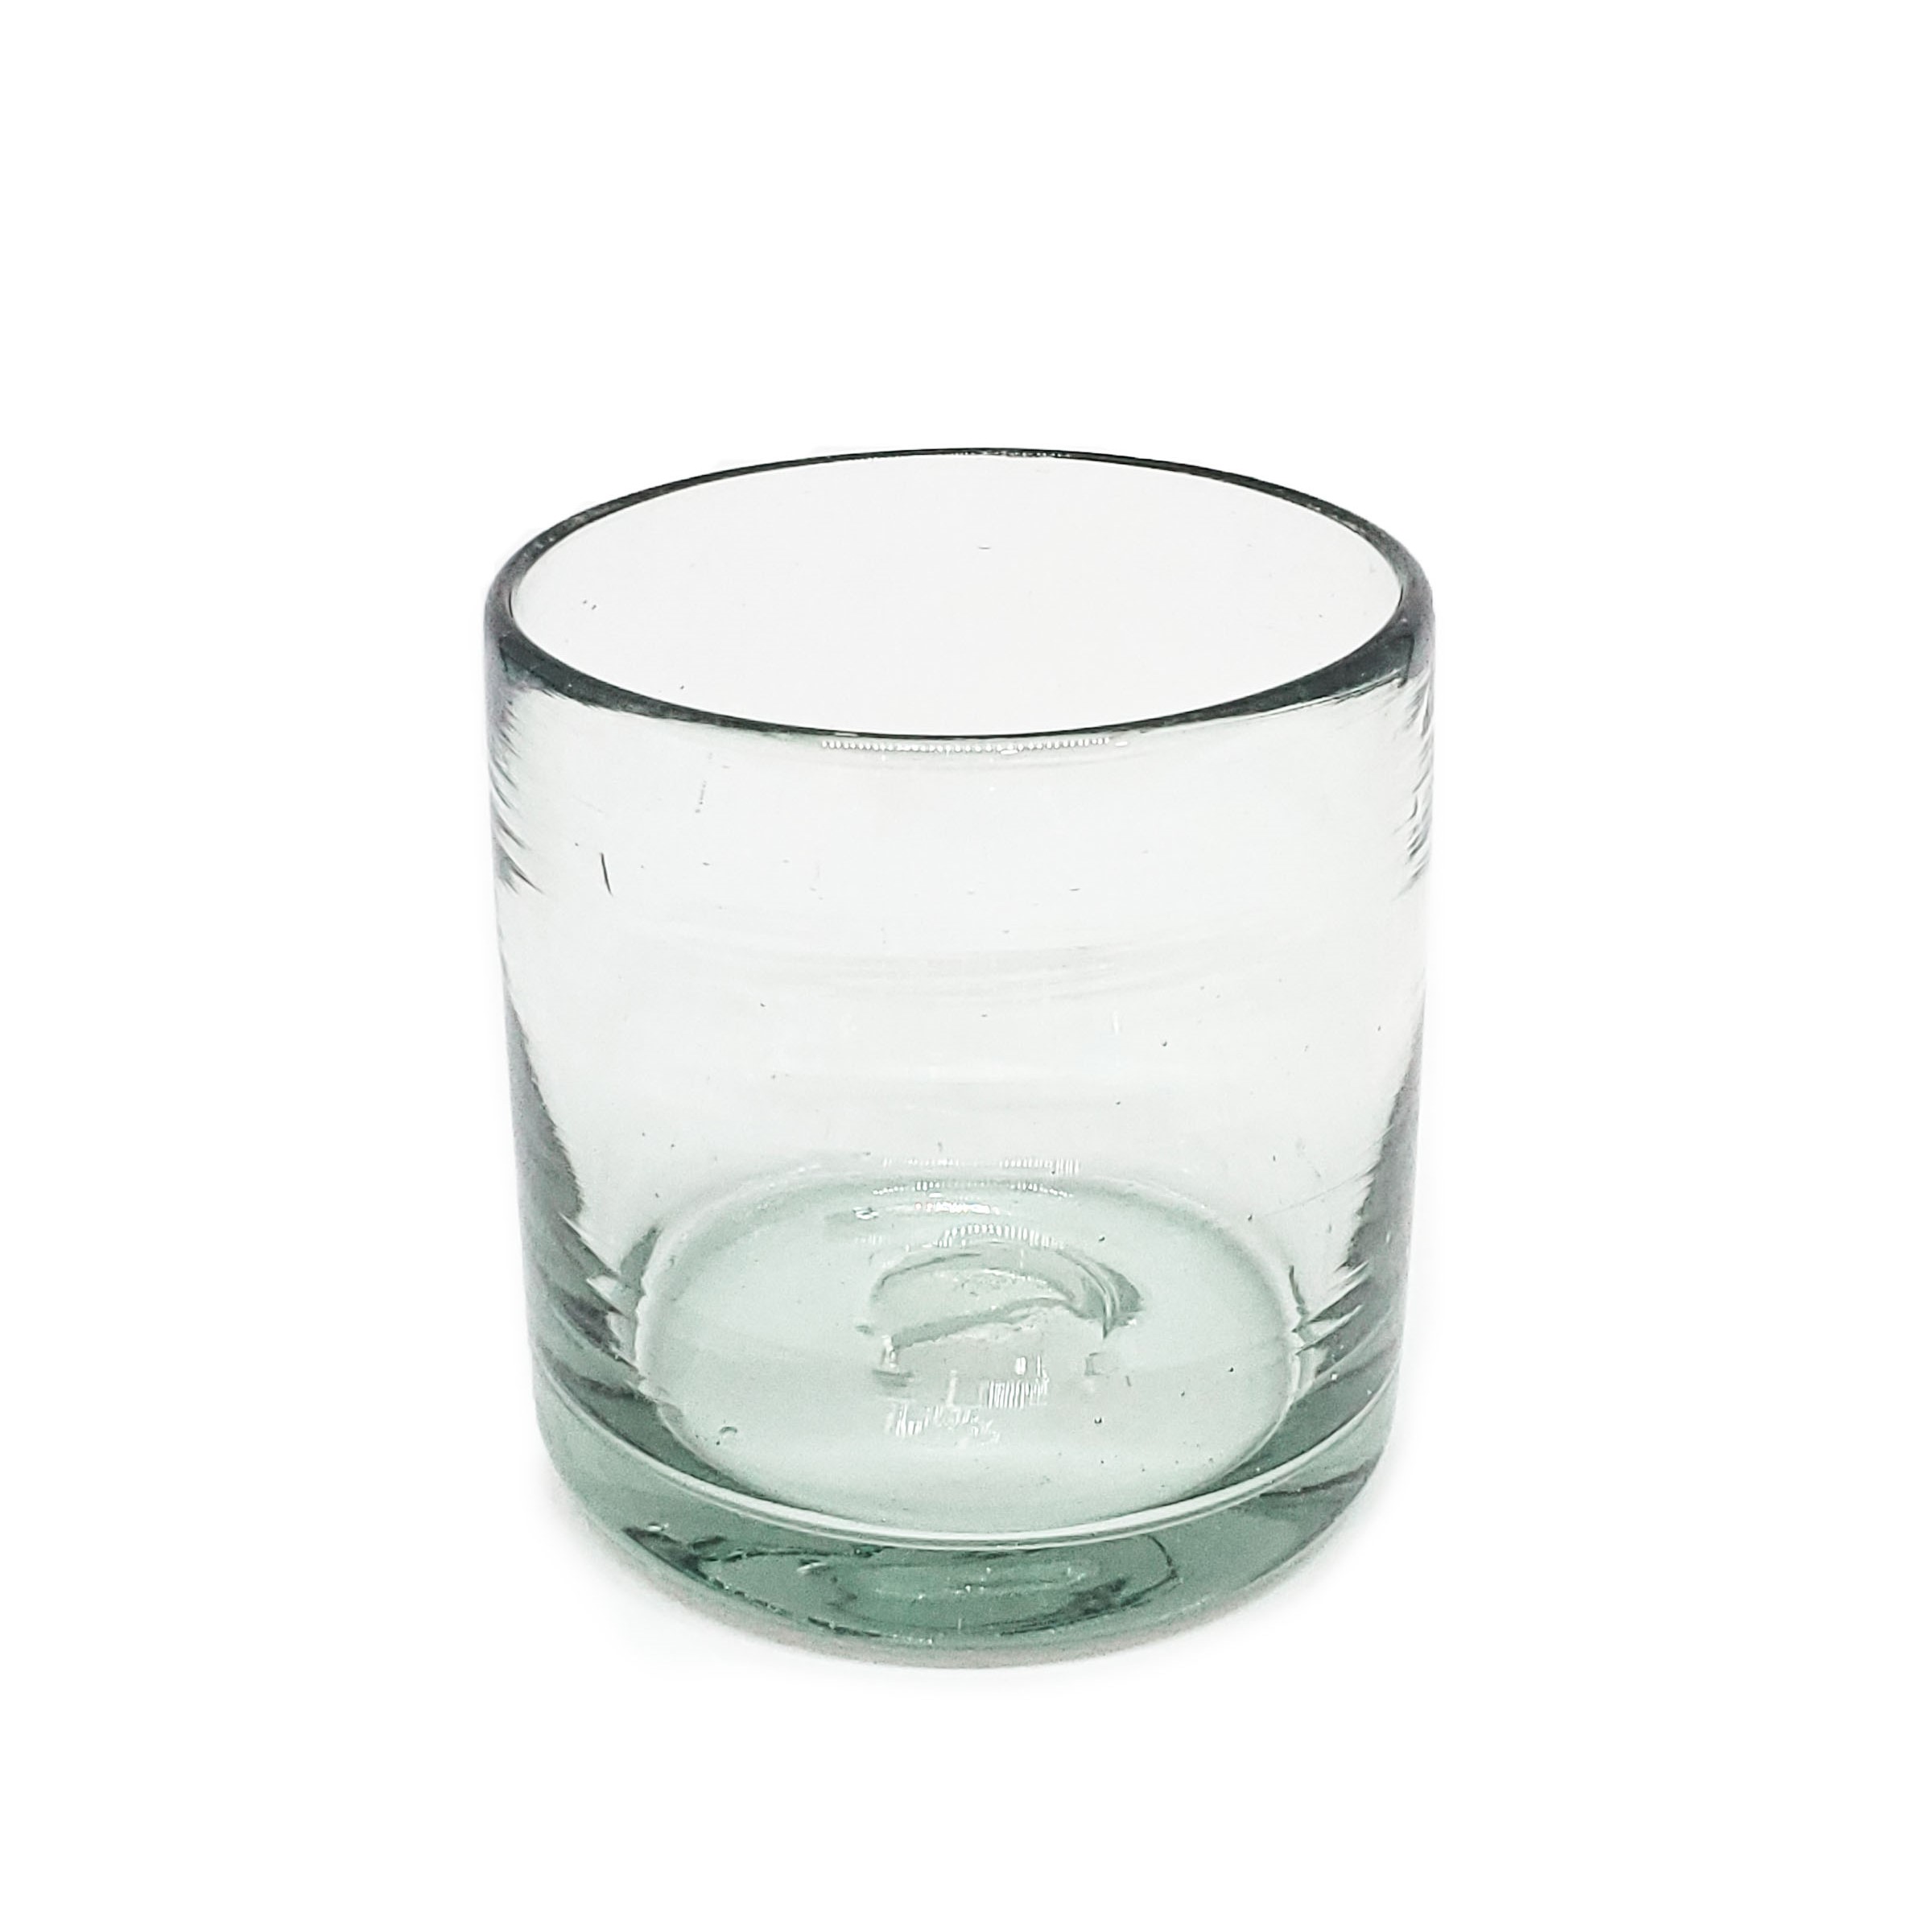 Color Transparente / Juego de 6 vasos DOF 8oz Transparentes / Éstos artesanales vasos le darán un toque clásico a su bebida favorita.